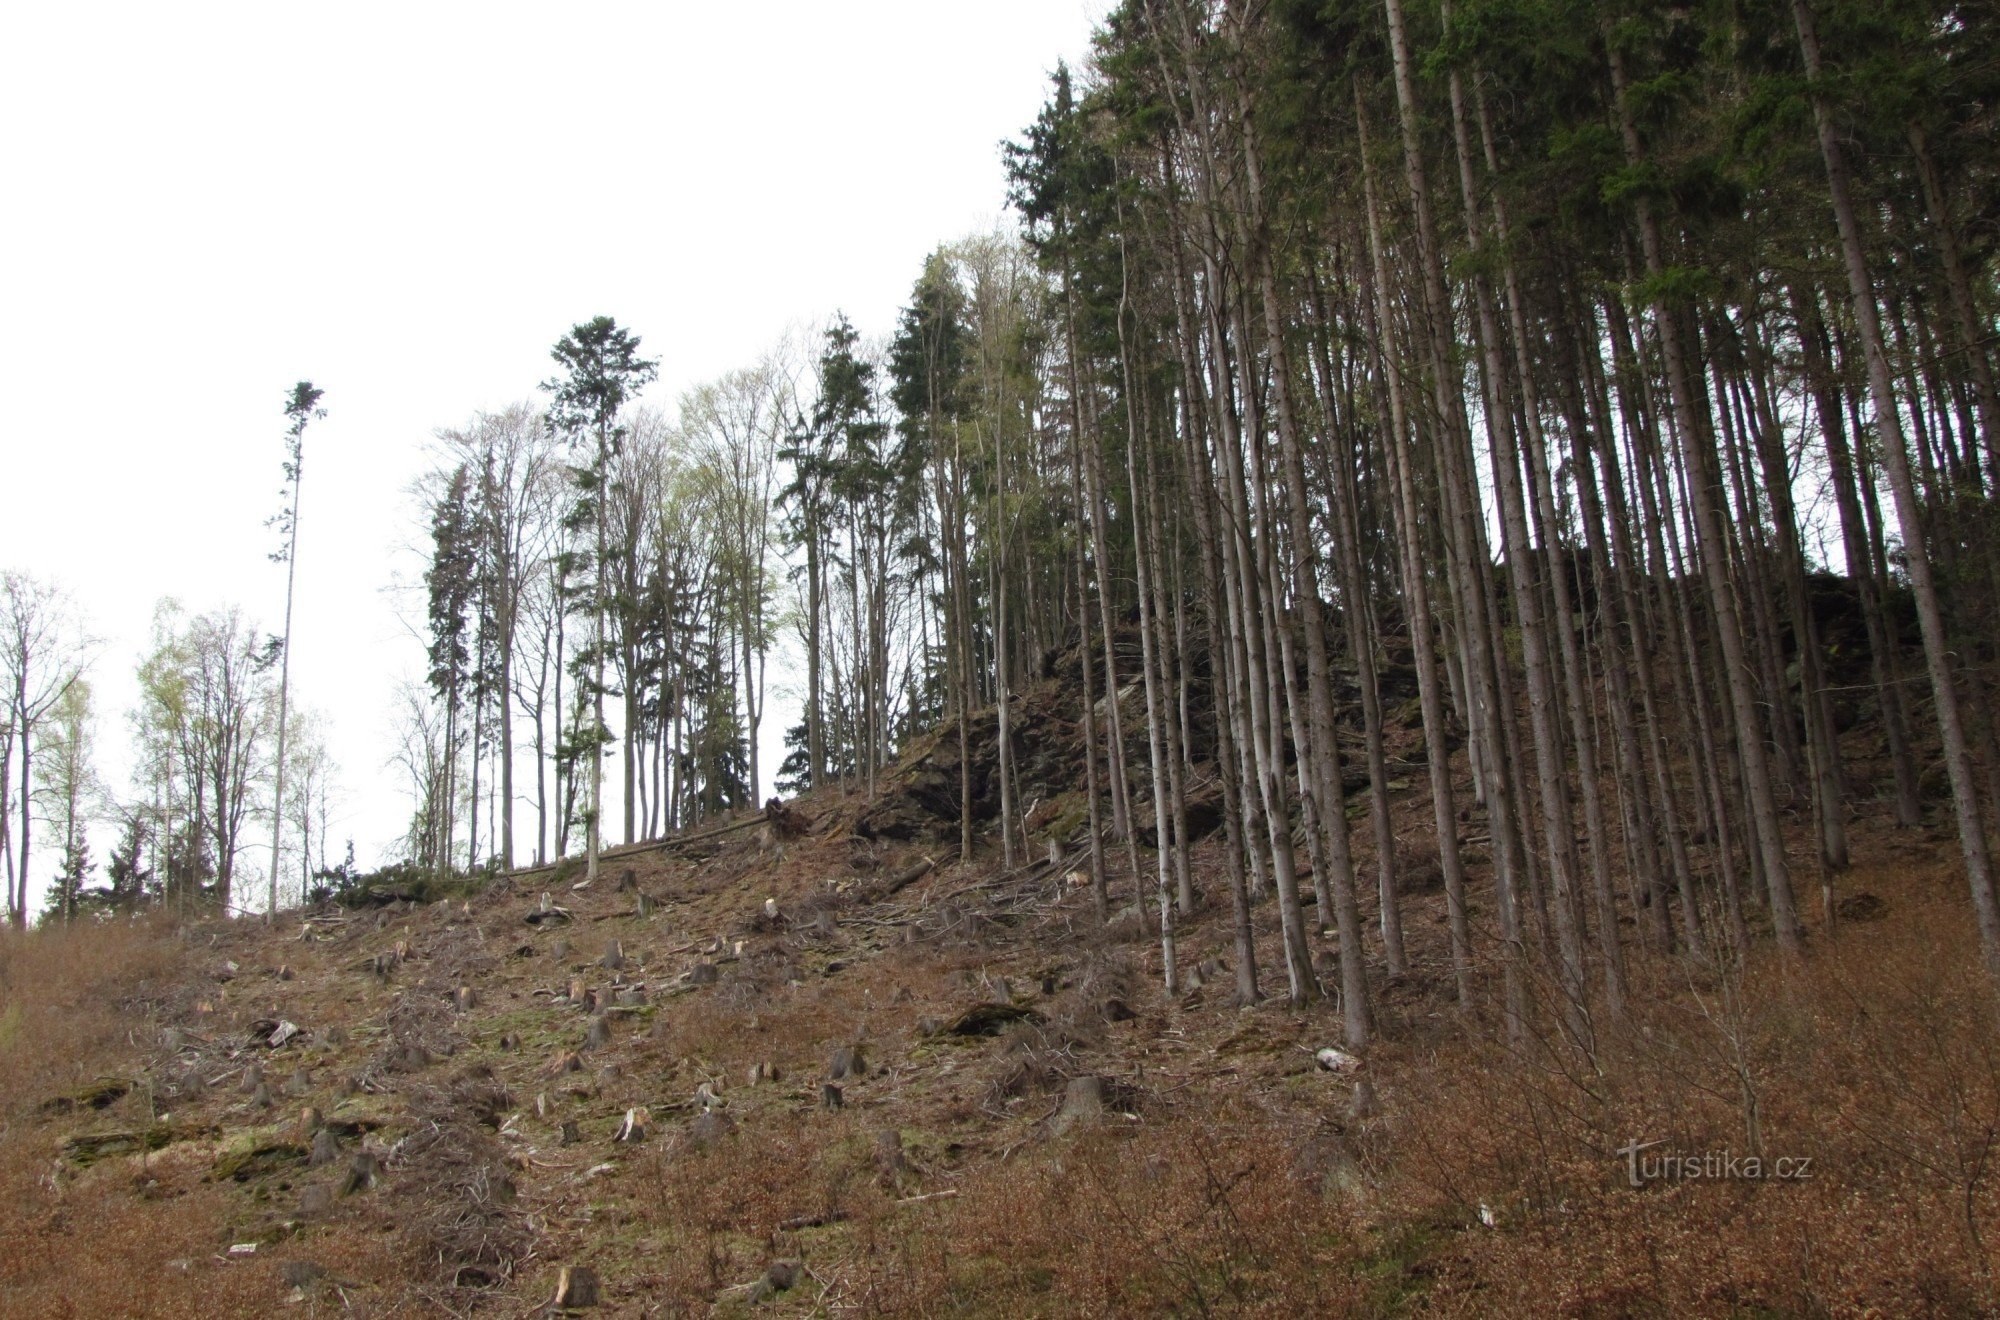 Una passeggiata attraverso la valle di Hučava